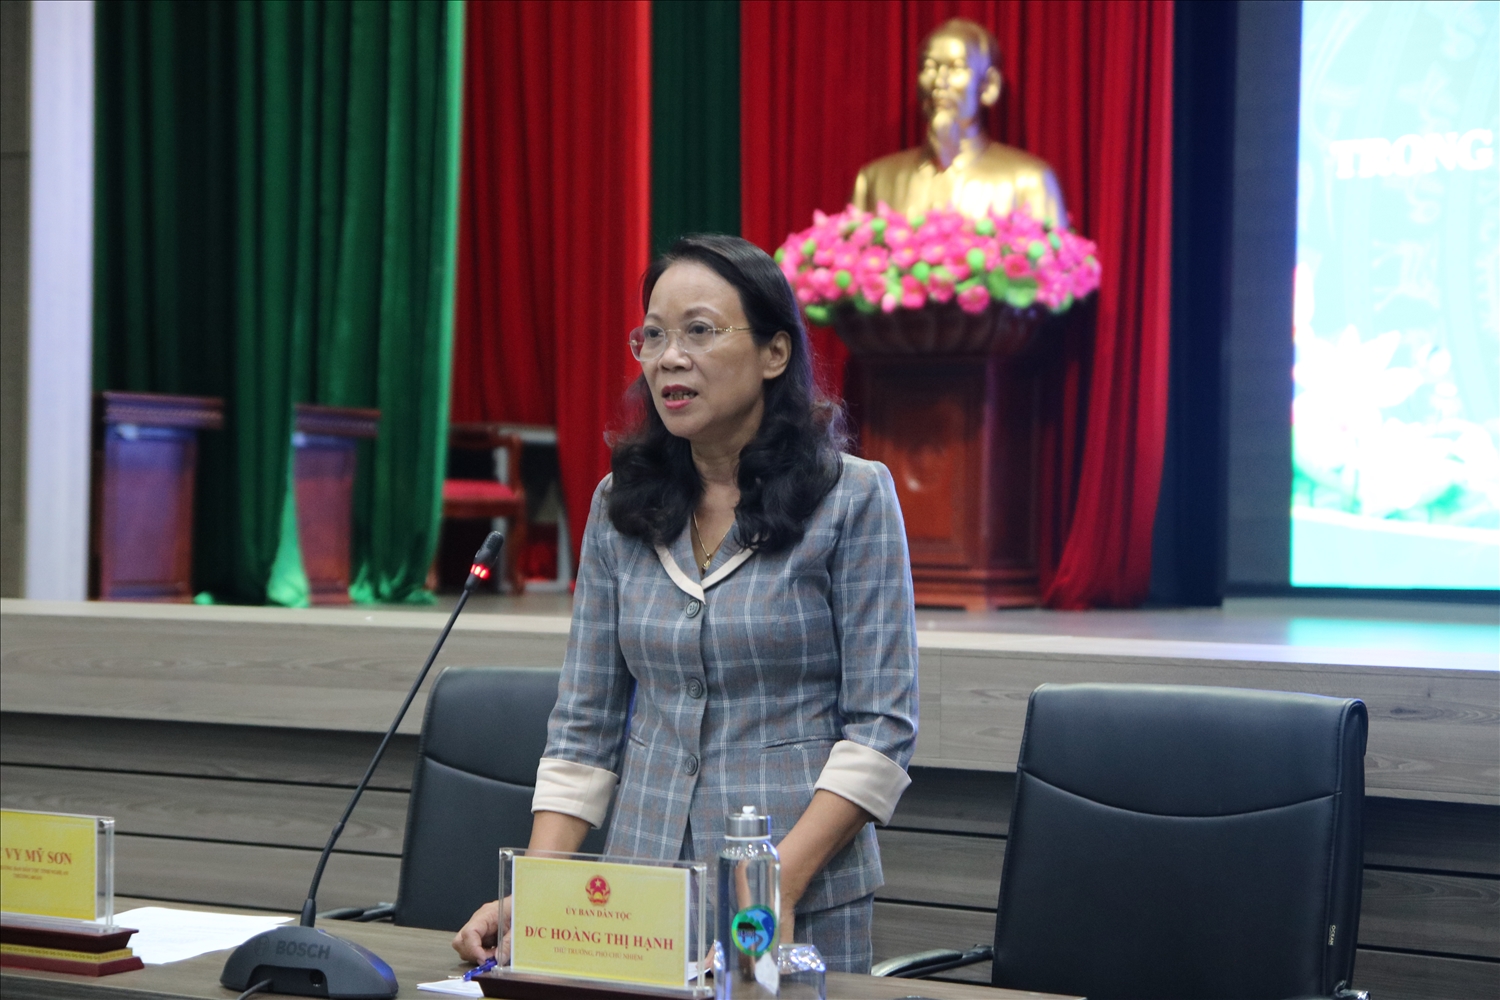 Thứ trưởng, Phó Chủ nhiệm UBDT Hoàng Thị Hạnh phát biểu tại buổi gặp mặt